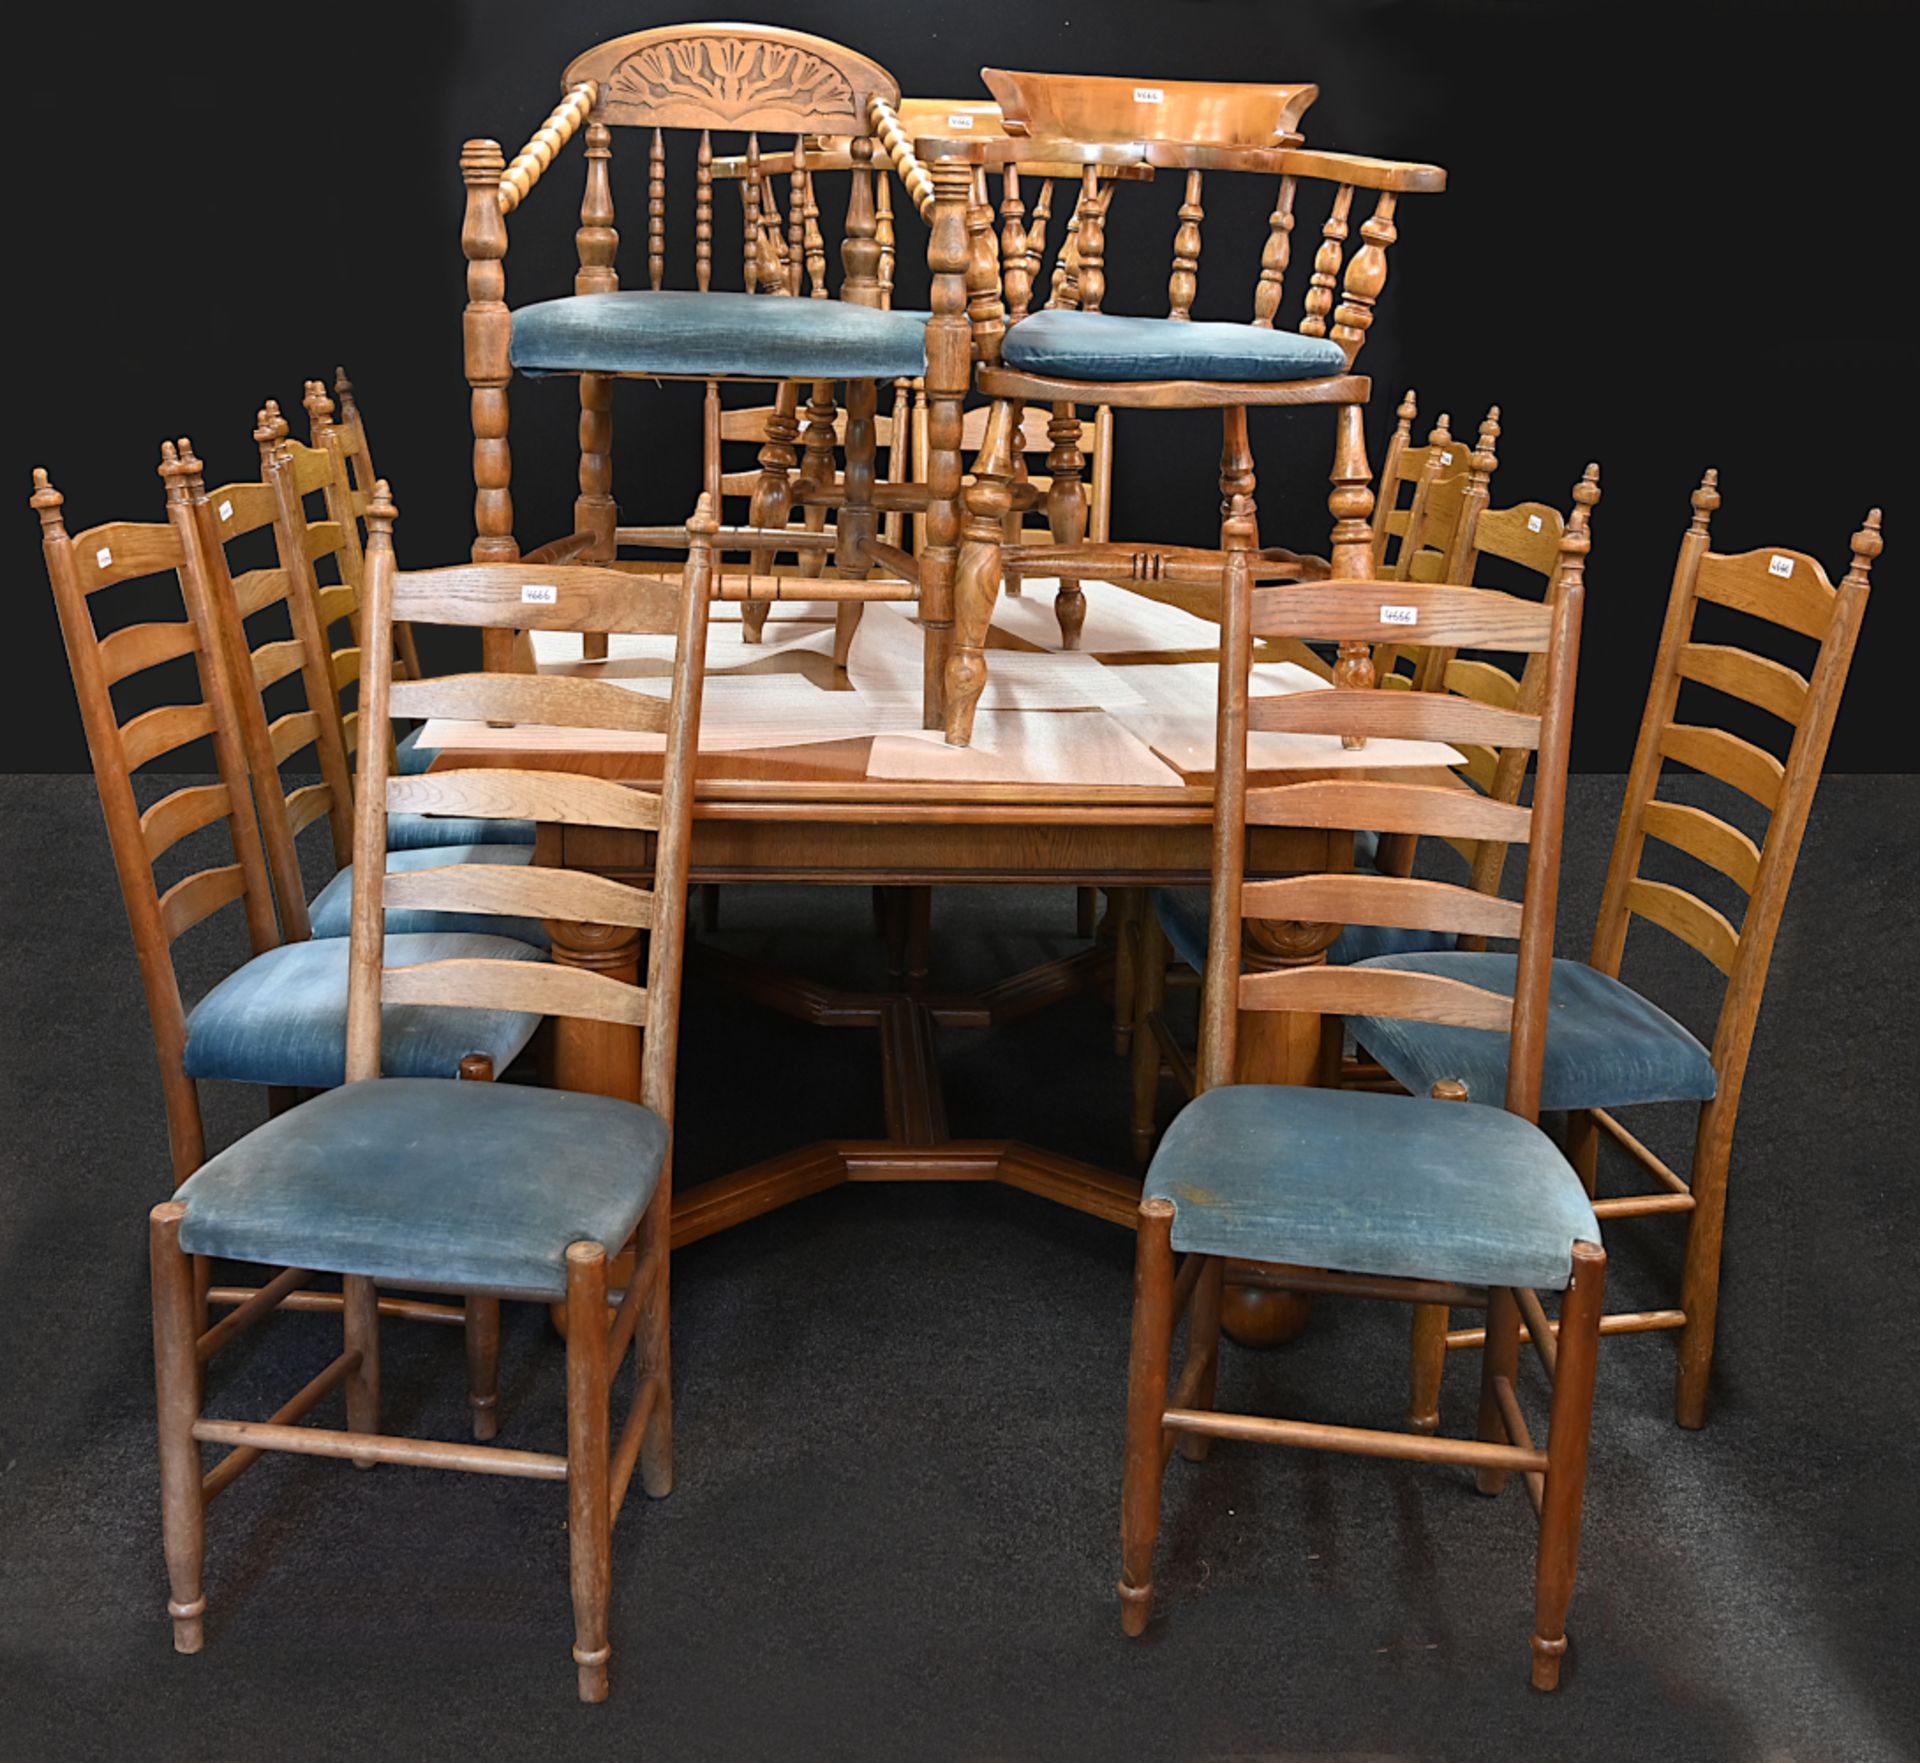 1 Tisch ca. 79x122x162cm ausgezogen ca. 304cm, 12 Stühle, 3 Armlehnstühle min. verziert,